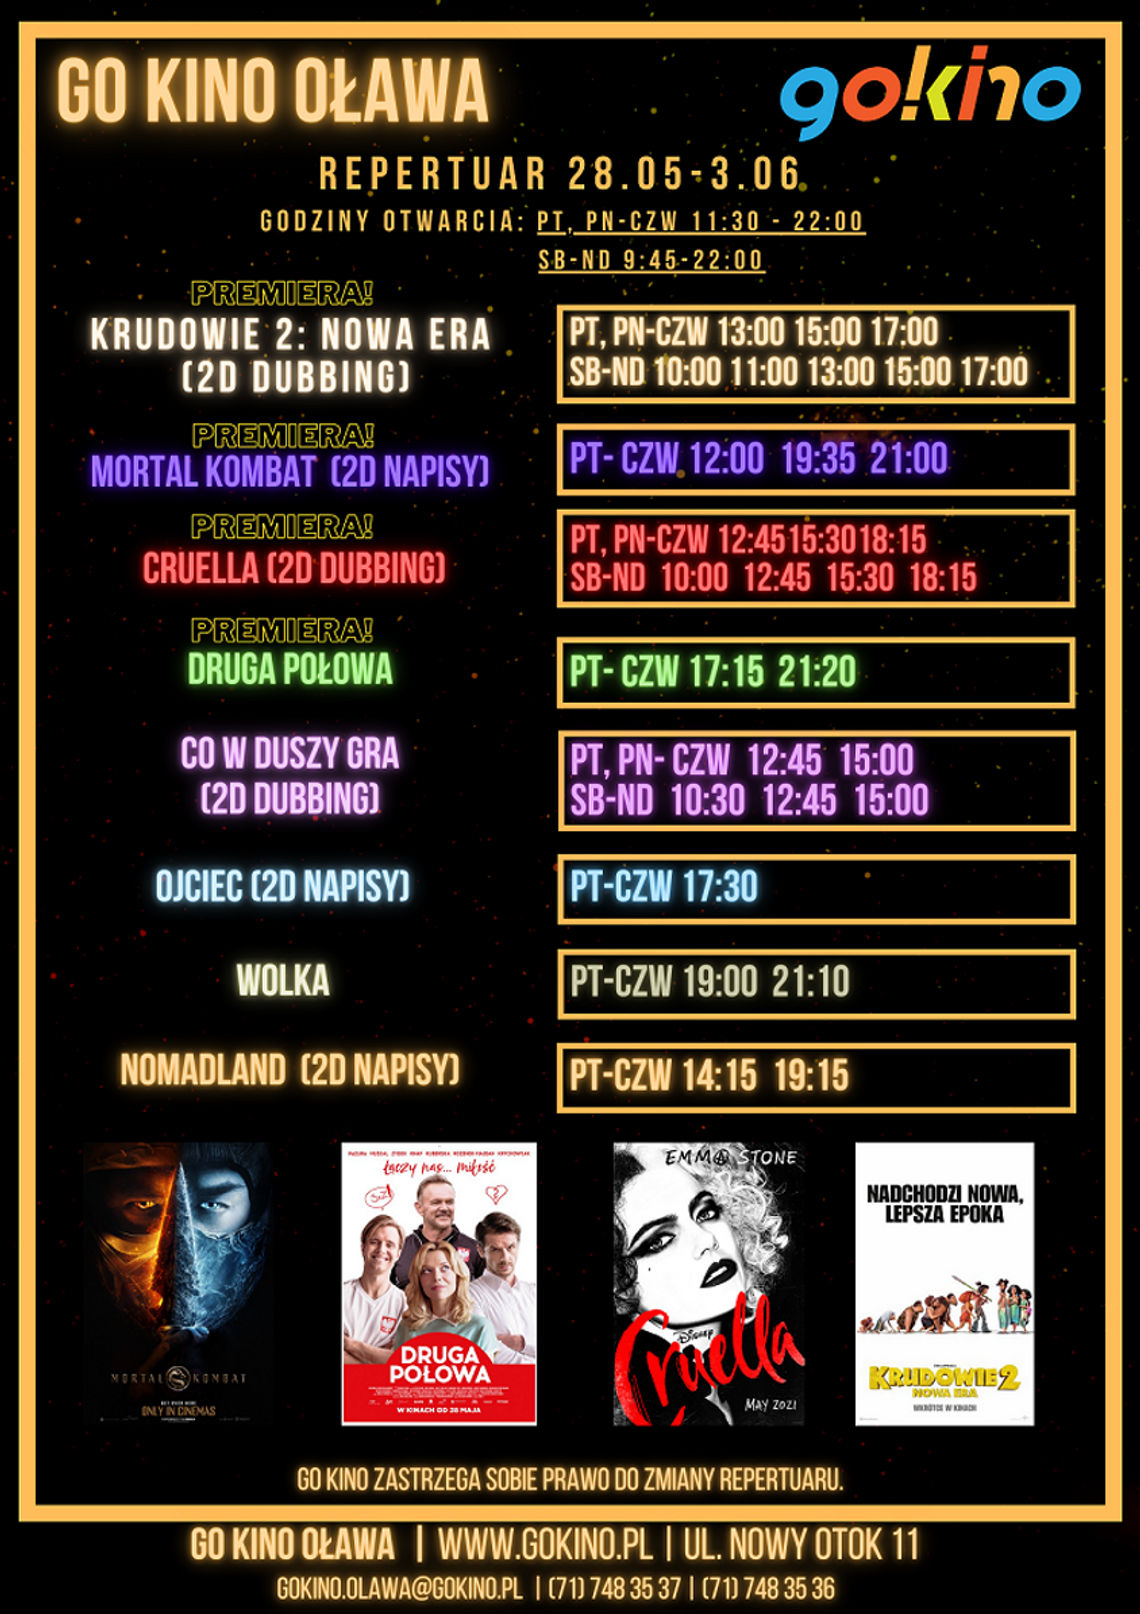 GO KINO zaprasza! Mortal Kombat i inne premiery!